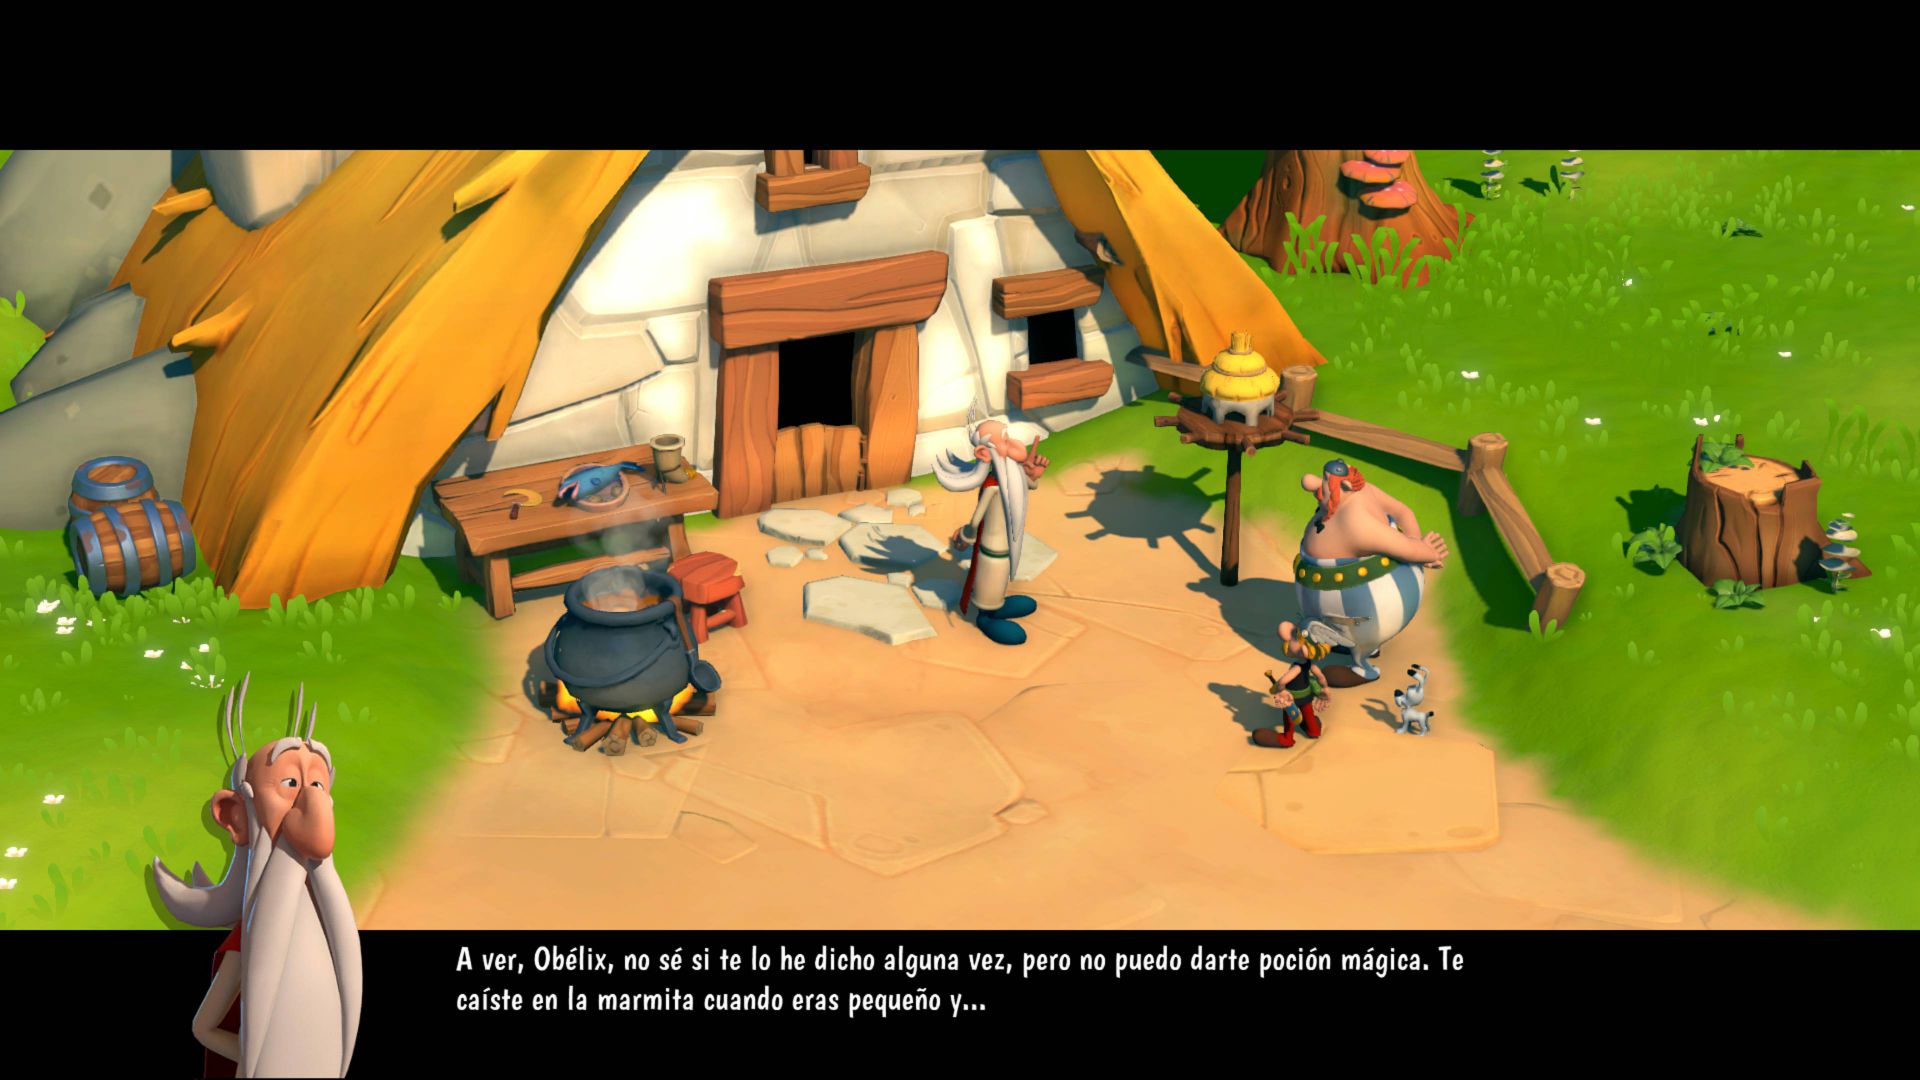 Asterix &amp; Obelix XXL3,Astérix &amp; Obélix XXL3: El Menhir de Cristal,Asterix &amp; Obelix XXL3: The Crystal Menhir